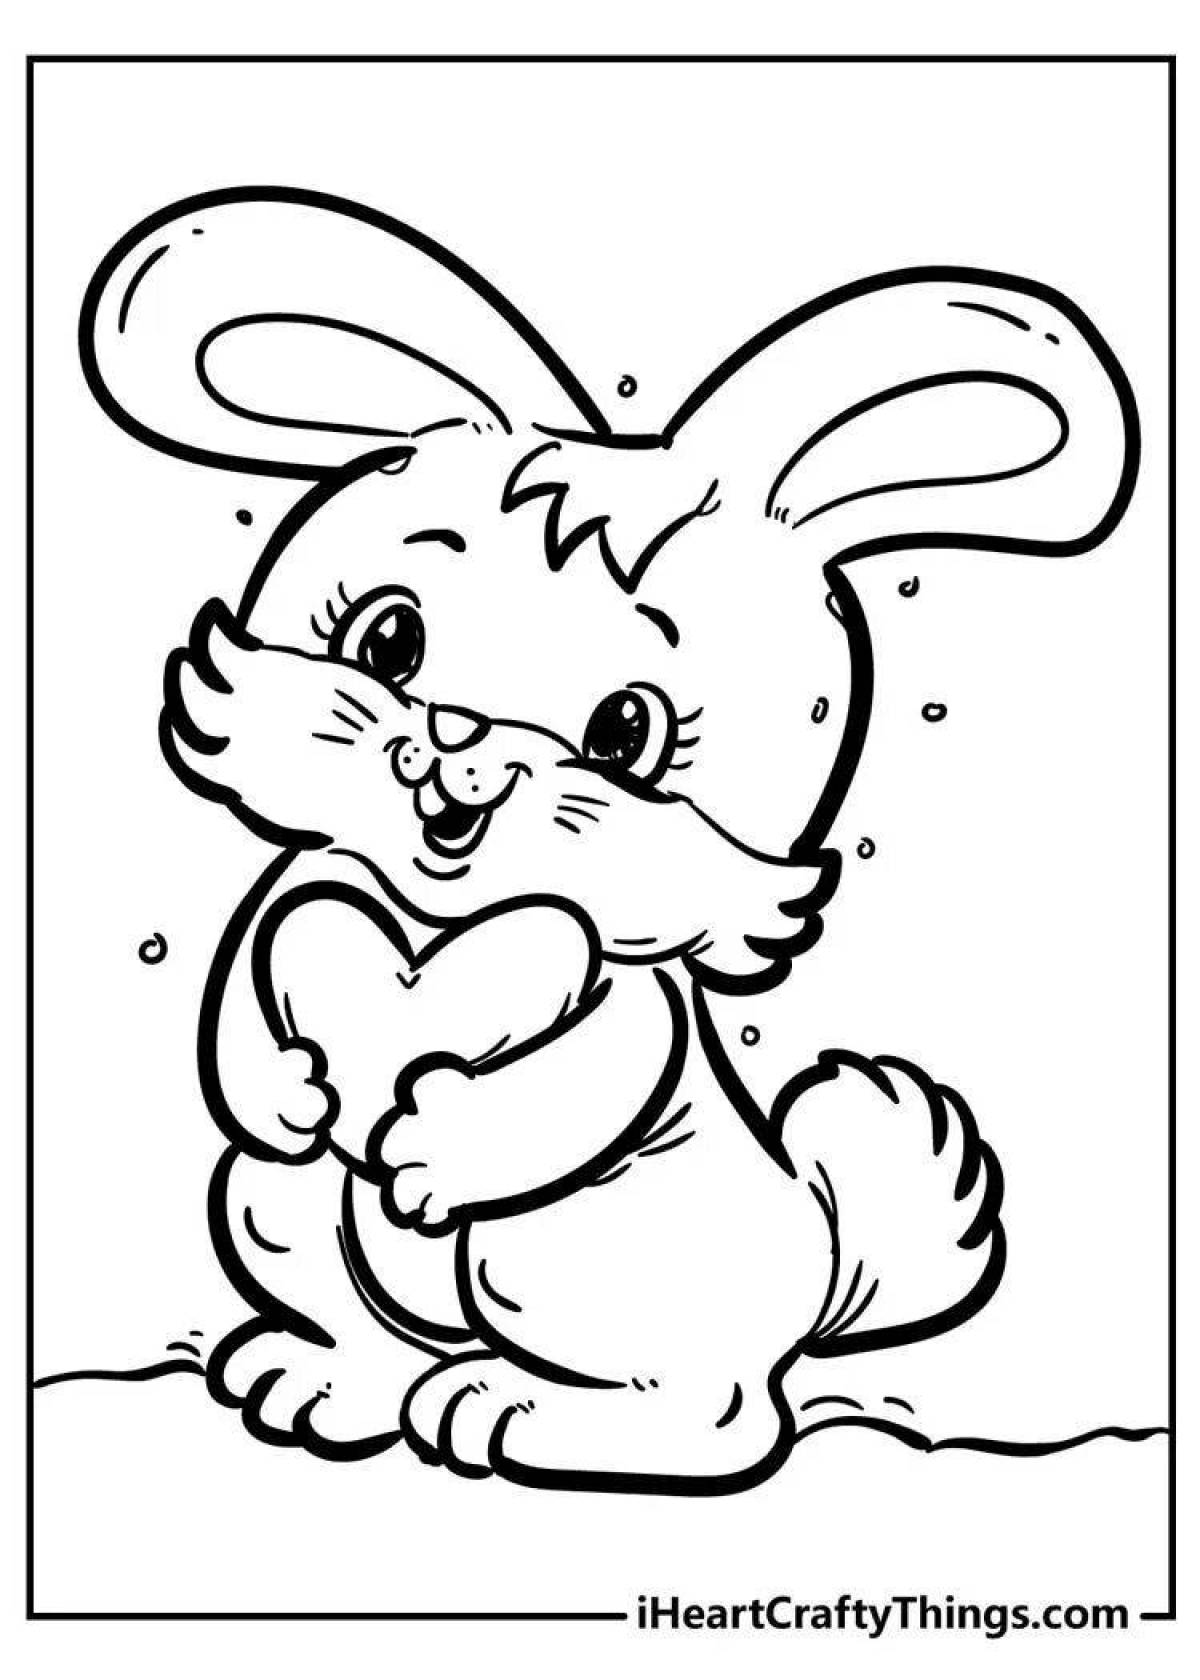 Веселый кролик-раскраска